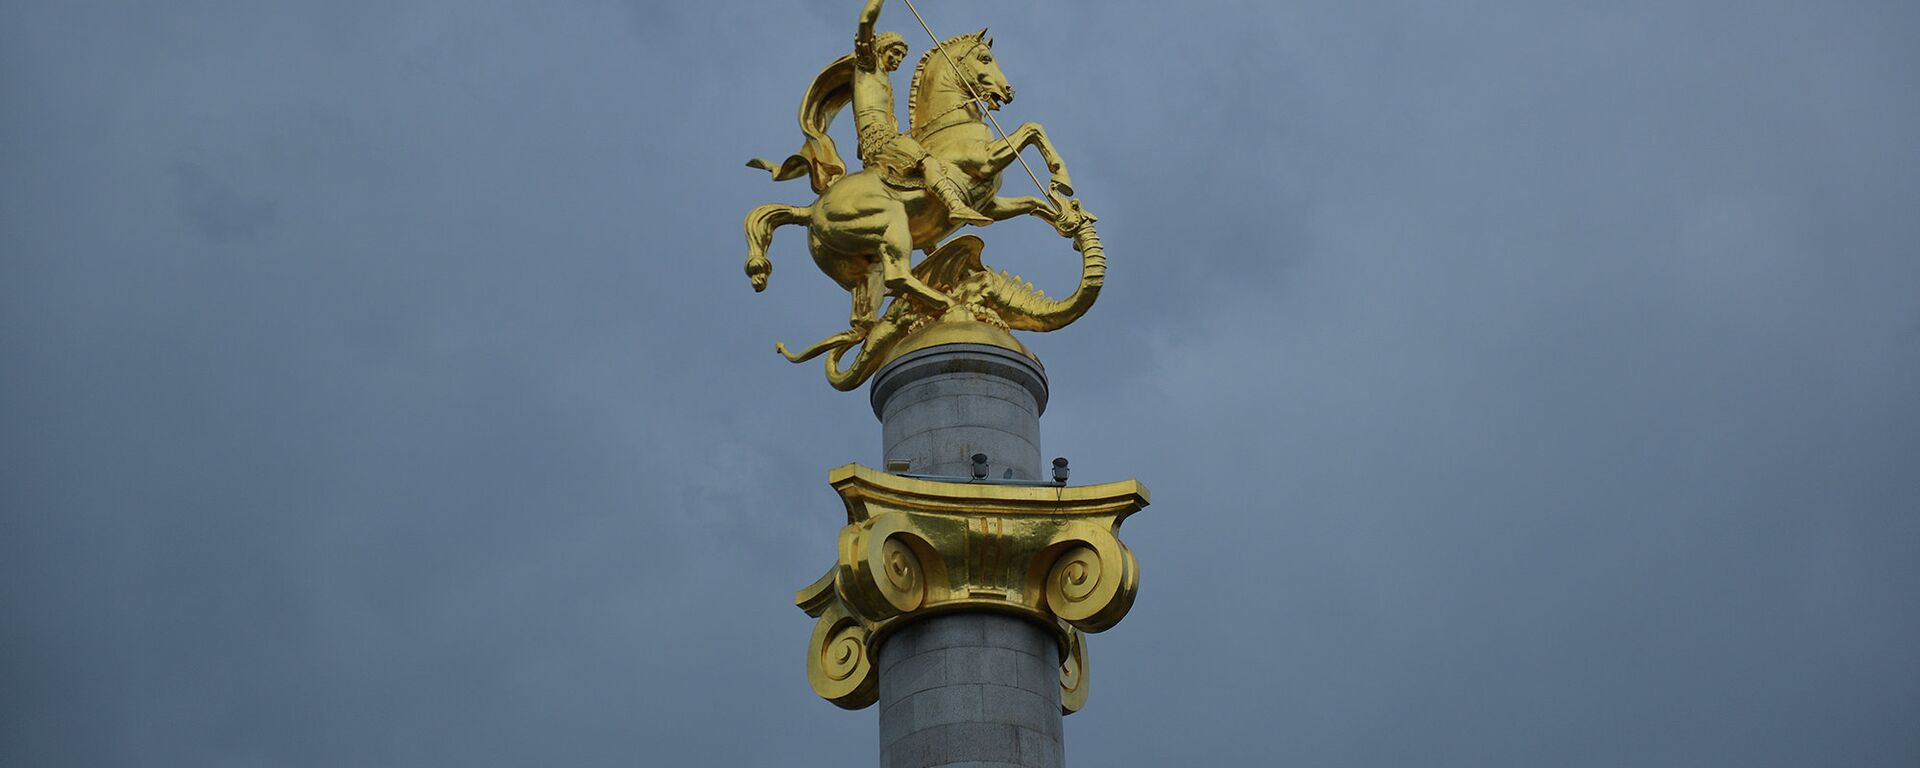 Памятник Святому Георгию на площади Свободы - Sputnik Грузия, 1920, 06.05.2021